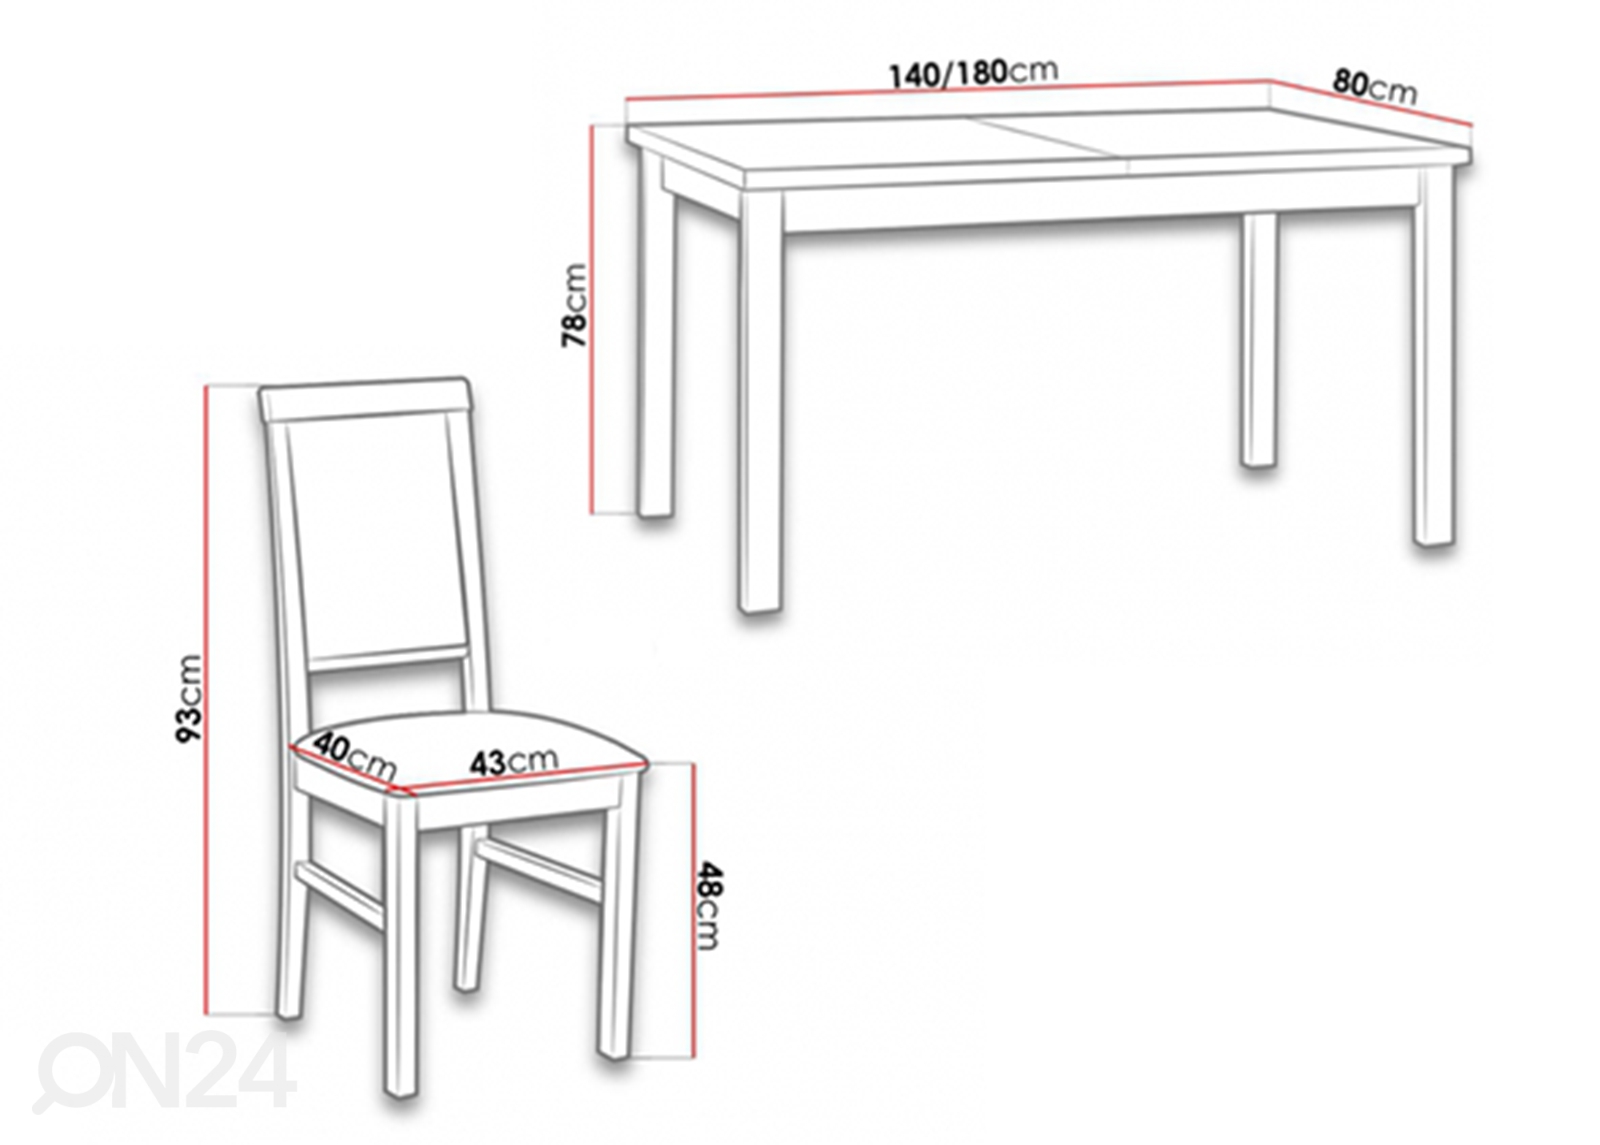 Pikendatav söögilaud 80x140-180 cm + 6 tooli suurendatud mõõdud